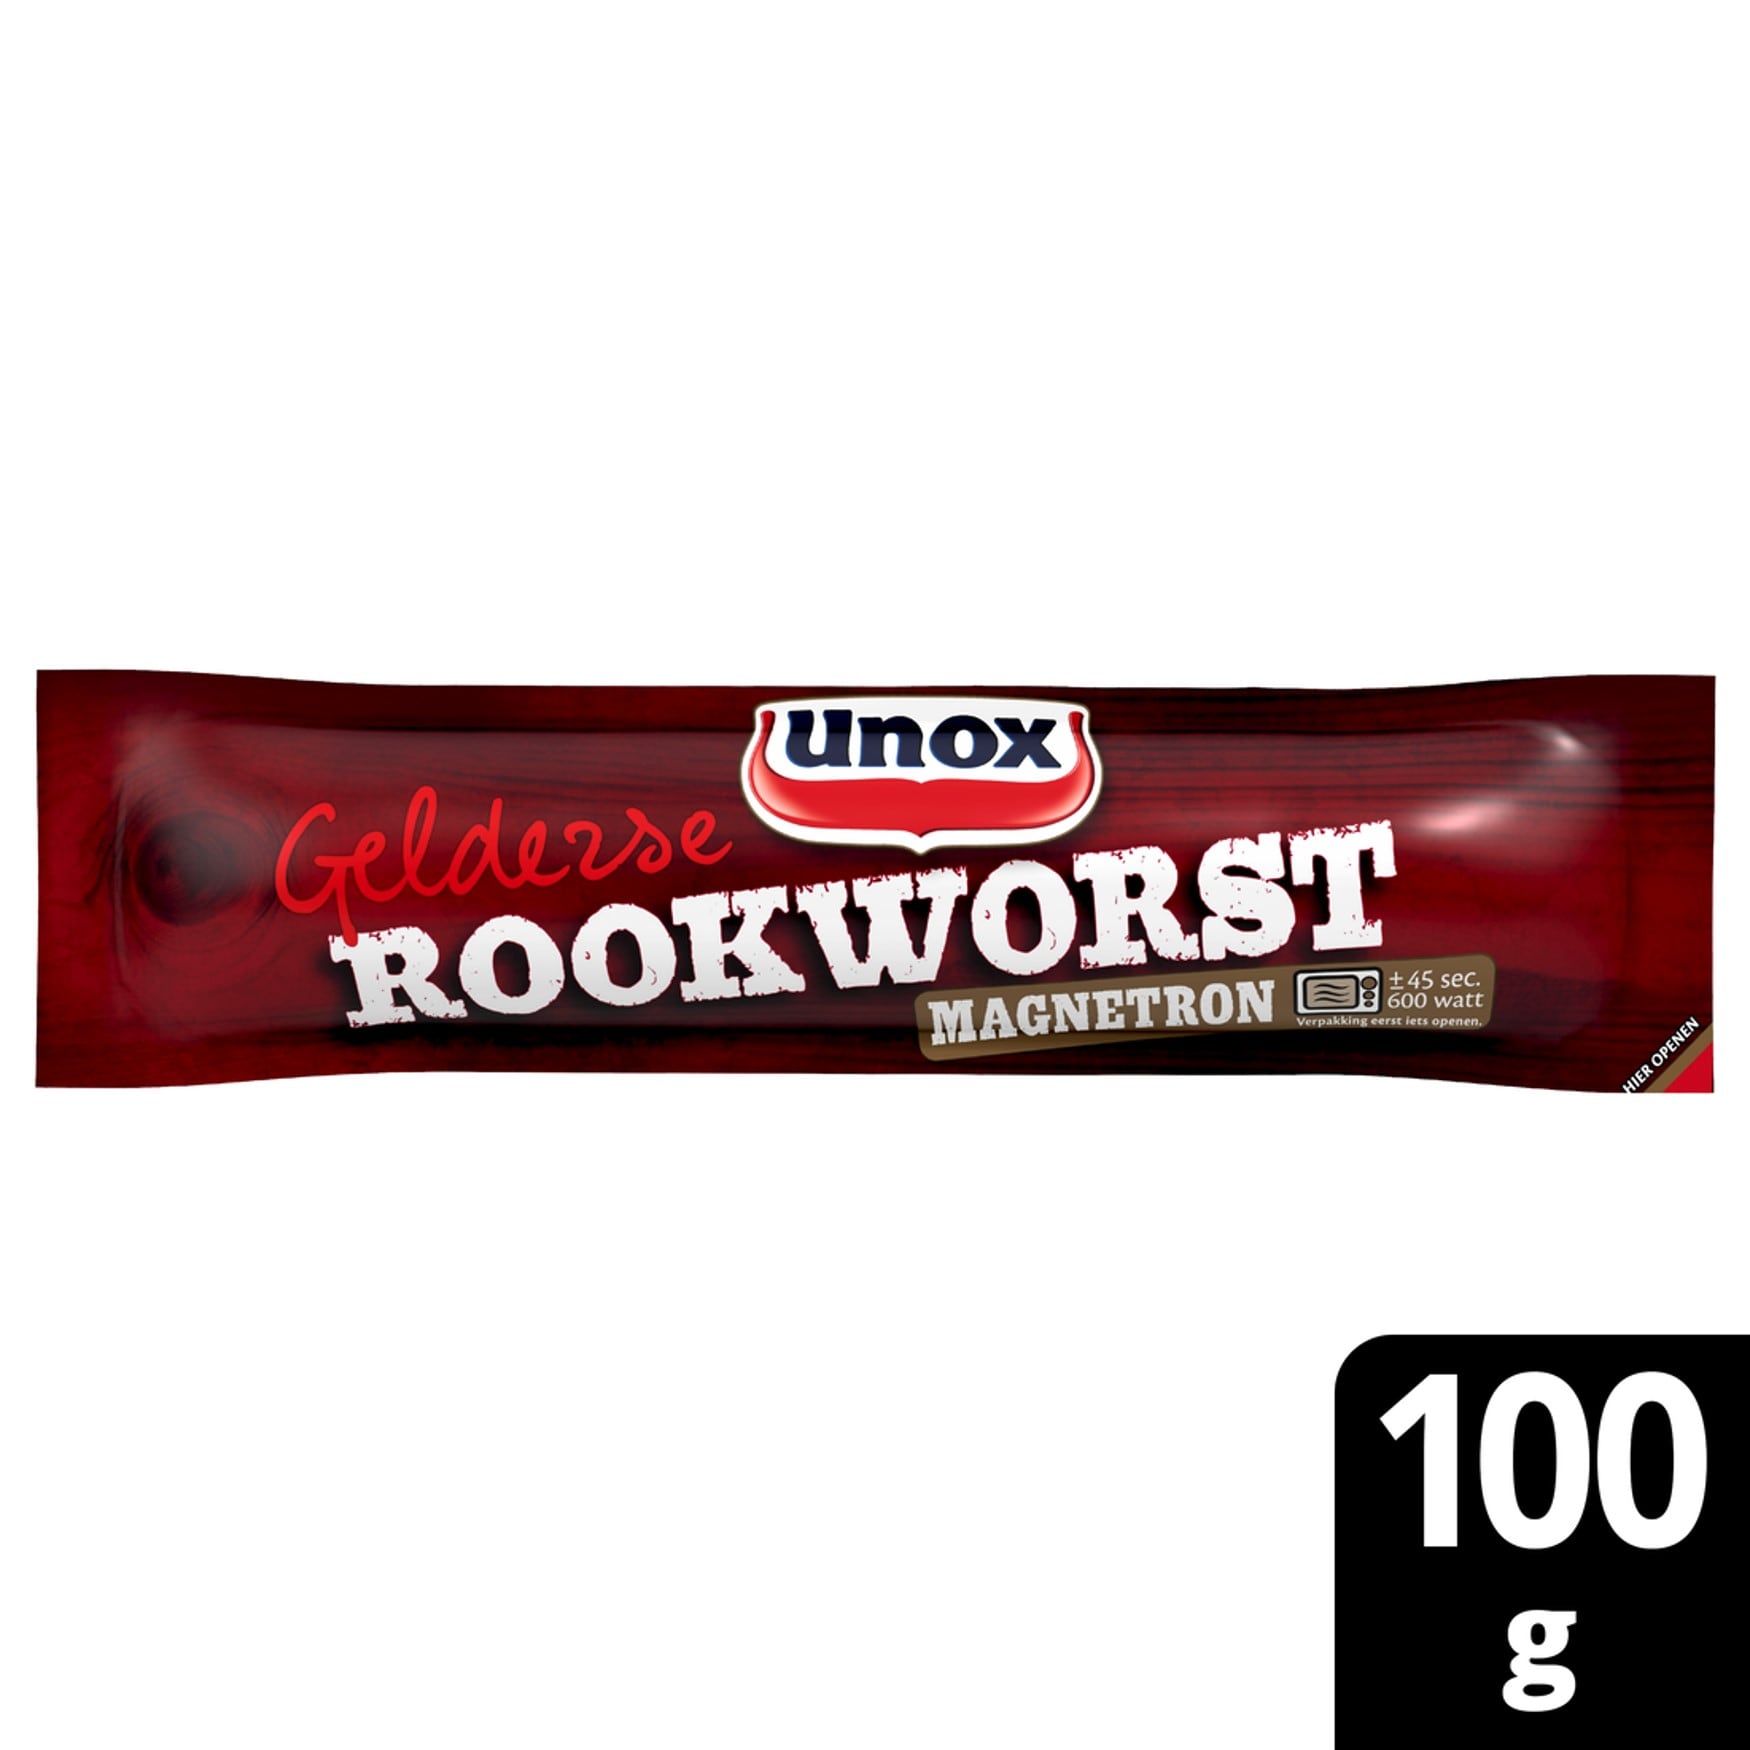 Unox Gelderse Rookworst Magnetron 100g - 